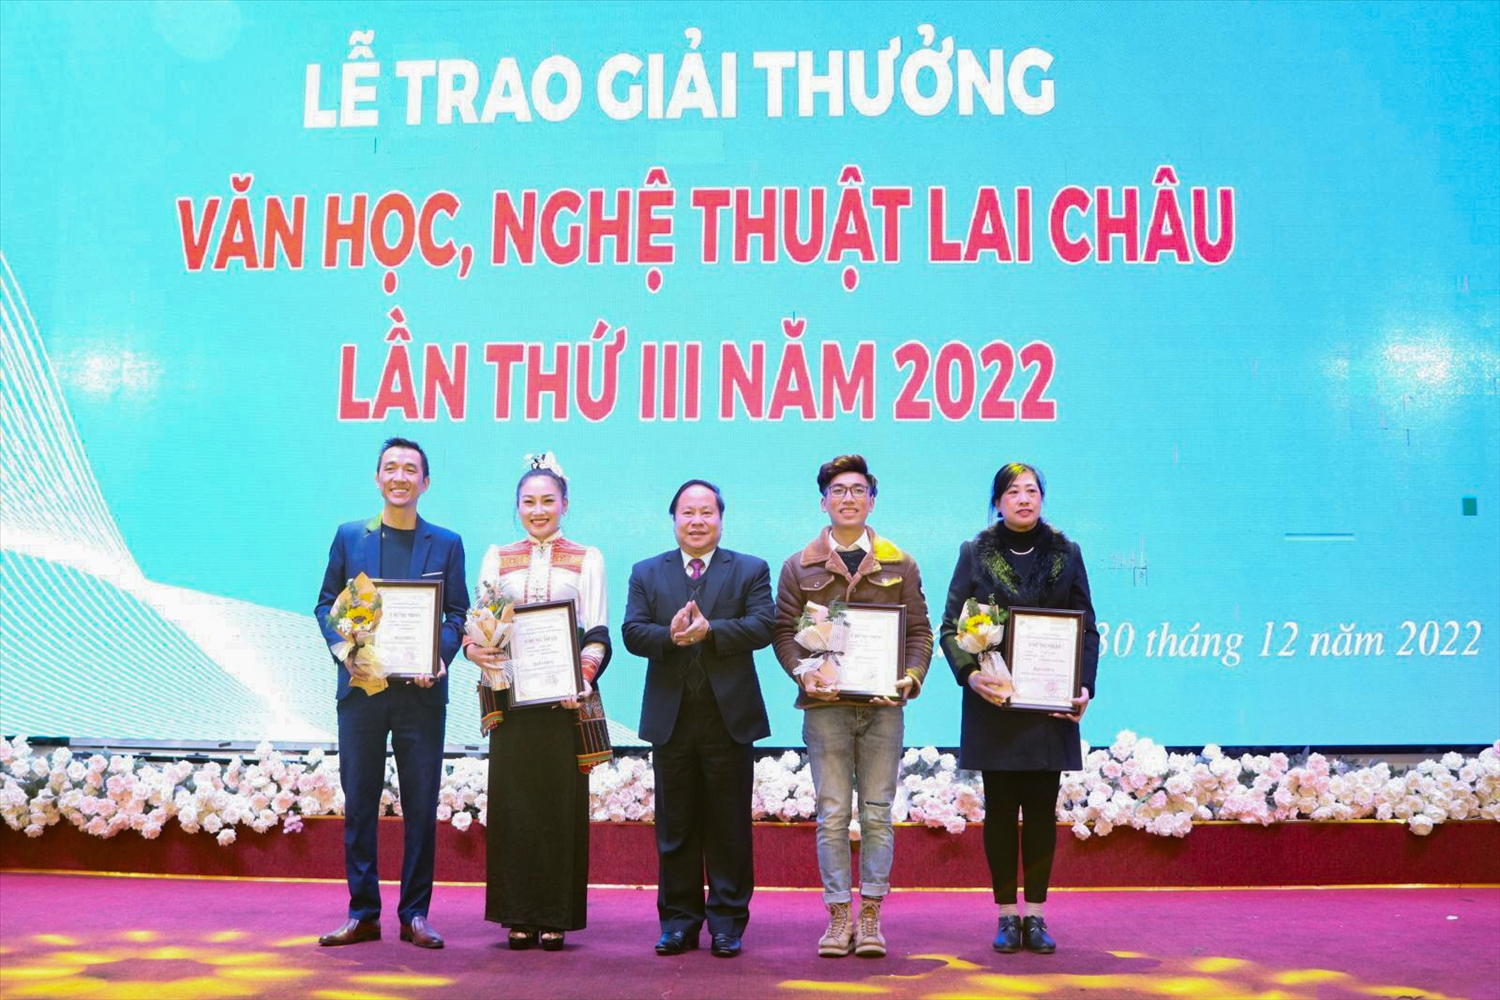 Ông Tống Thanh Hải, Phó Chủ tịch Thường trực UBND tỉnh, Chủ tịch Hội đồng Xét tặng giải thưởng Văn học, Nghệ thuật Lai Châu lần thứ III năm 2022 trao giải A cho các tác giả đạt Giải. 